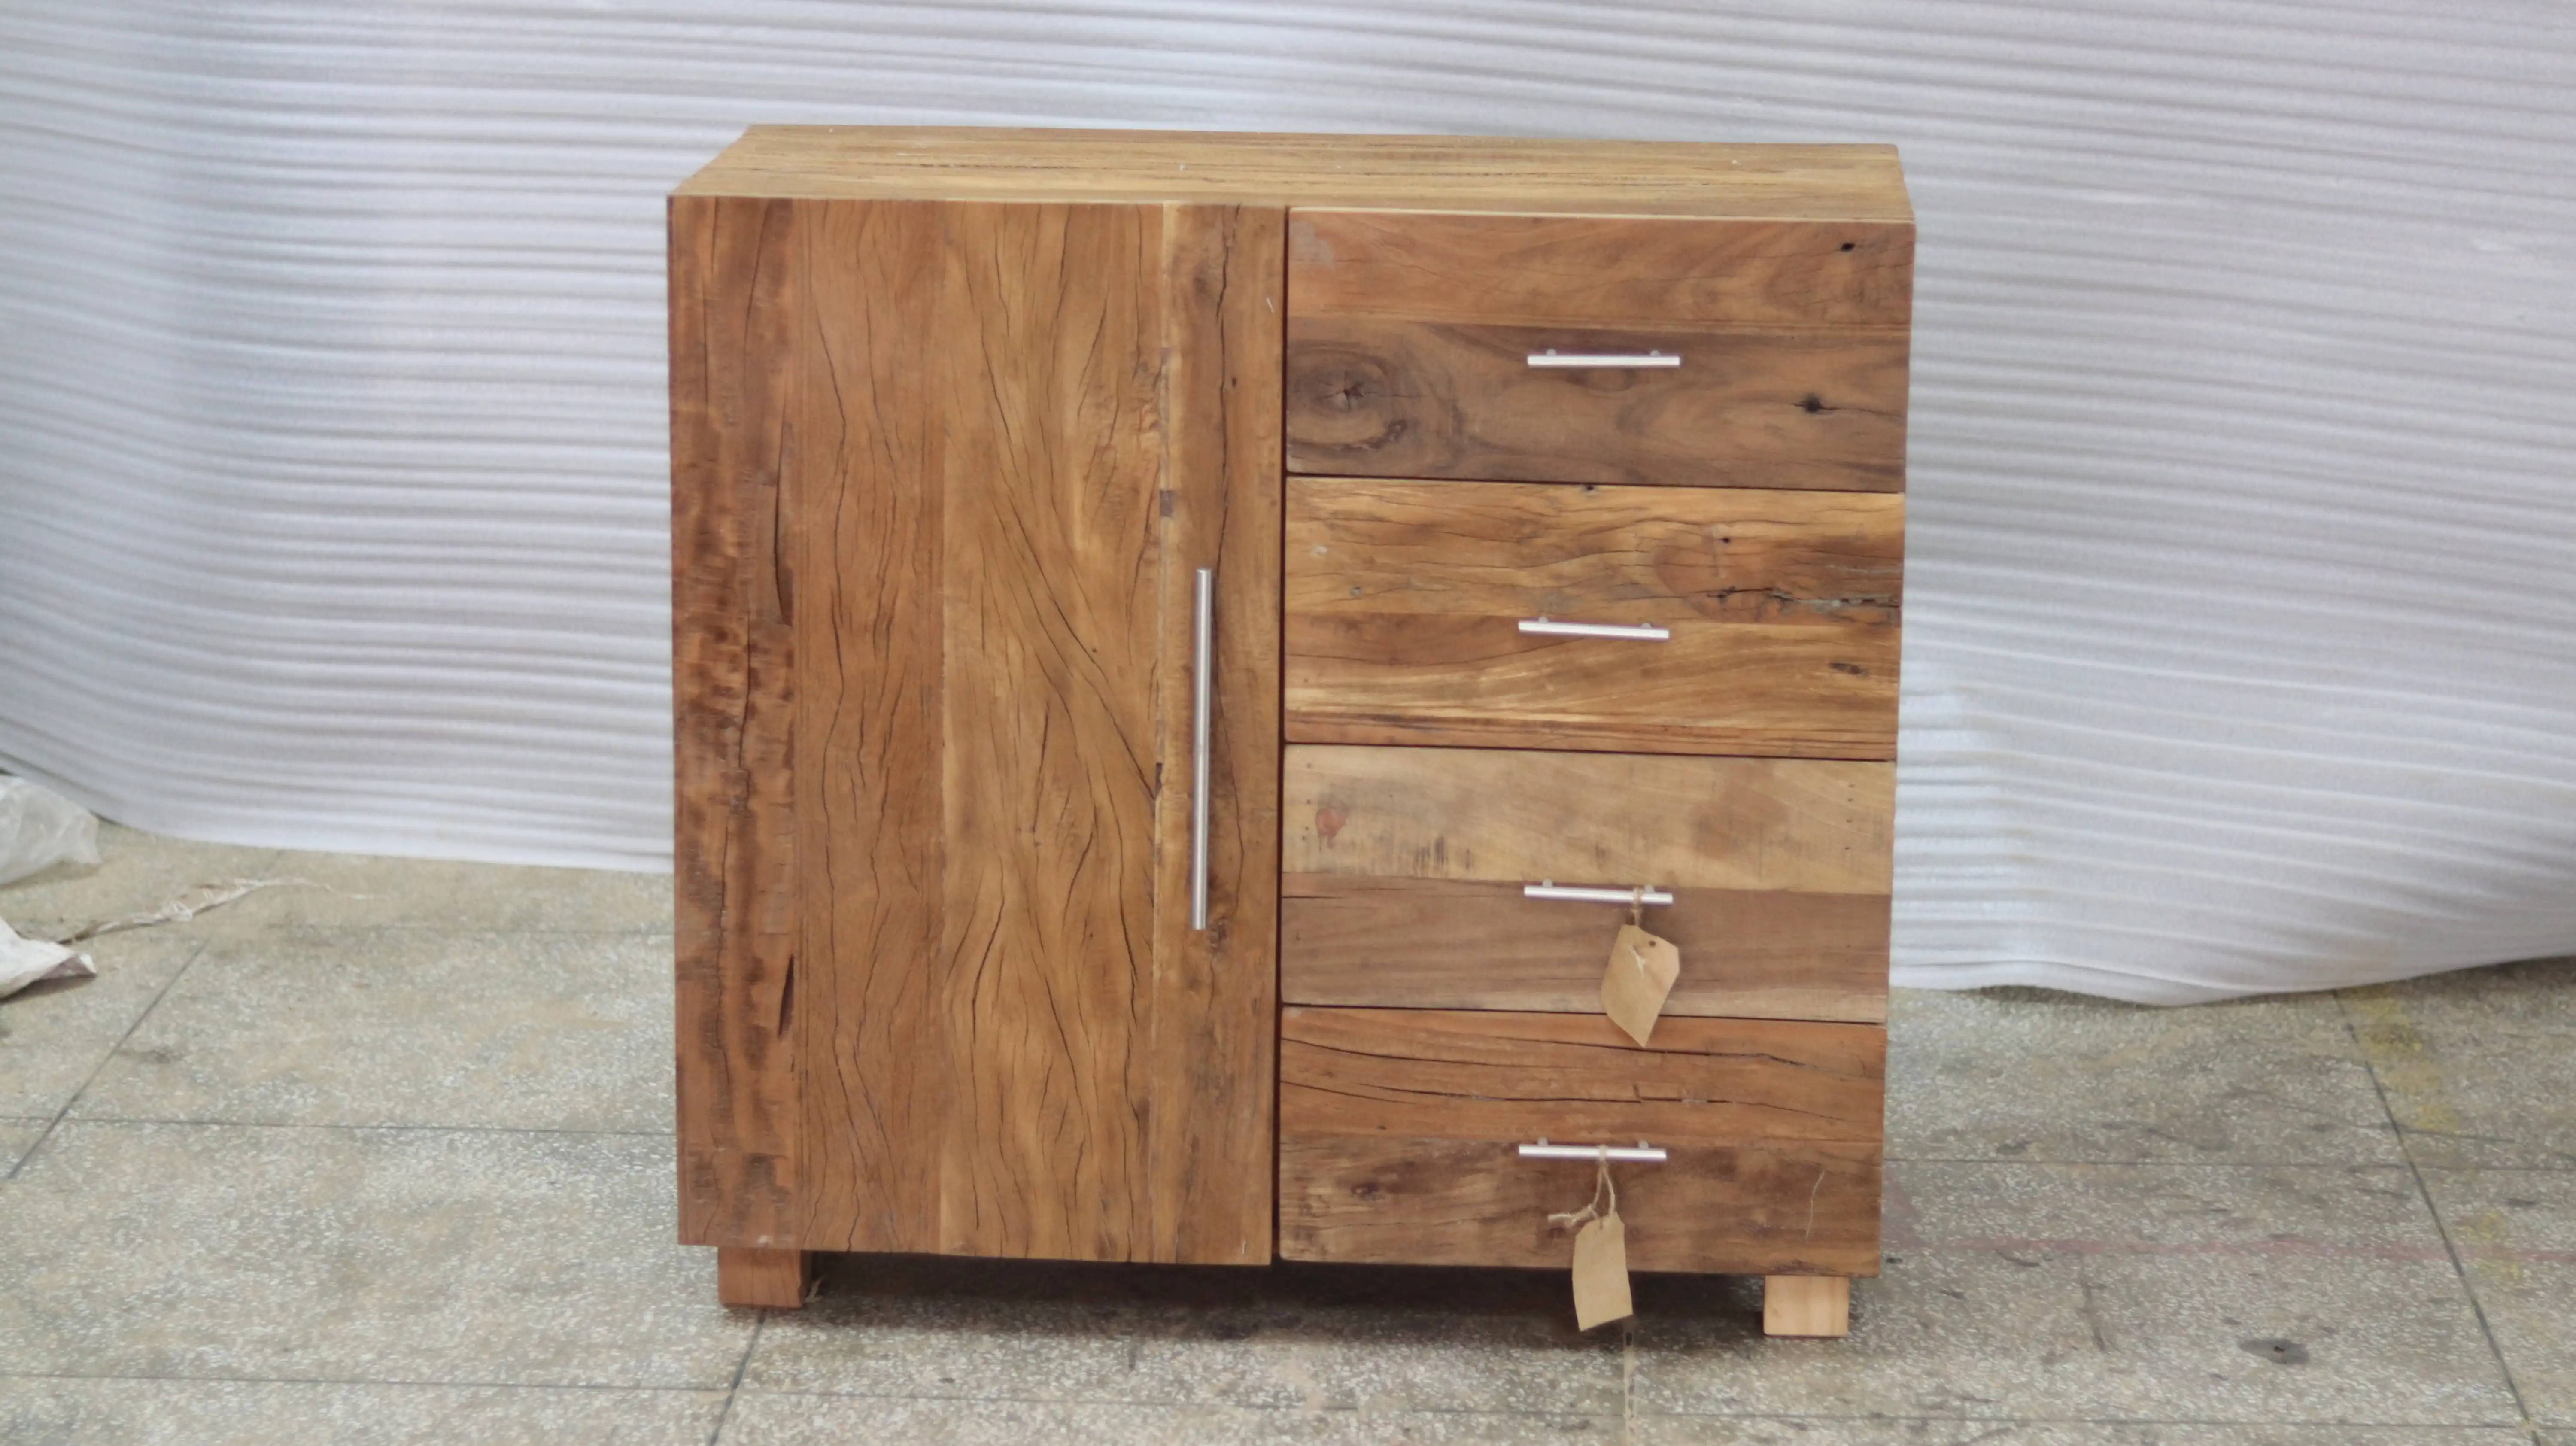 Reclaimed Wood Cabinet with 1 Door & 4 Drawers - popular handicrafts